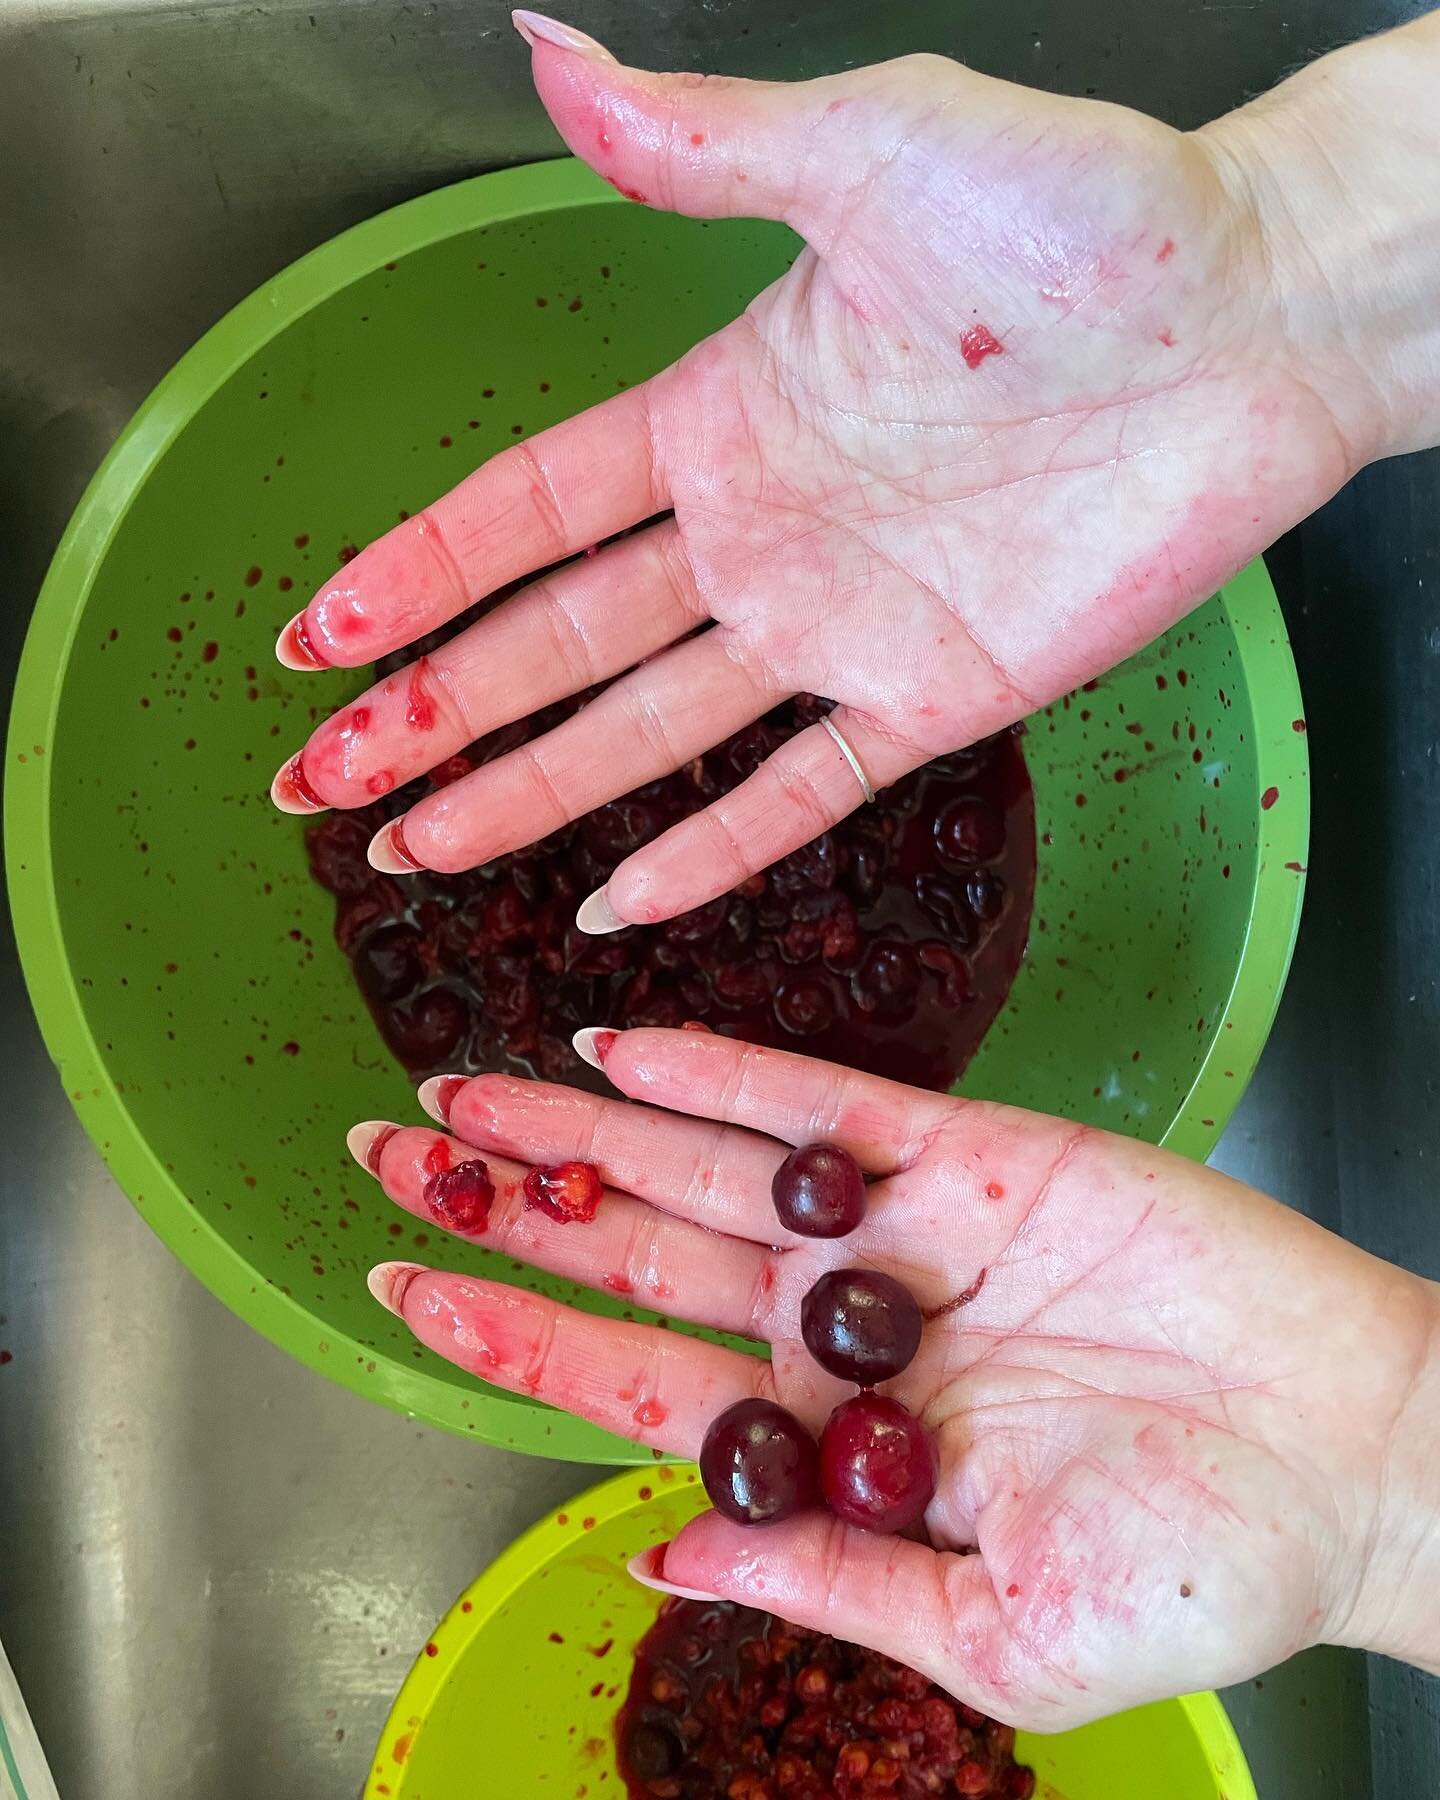 tart cherries 🍒 

#cherries #tart #hands #learningbyhand #buildyourskills #yum